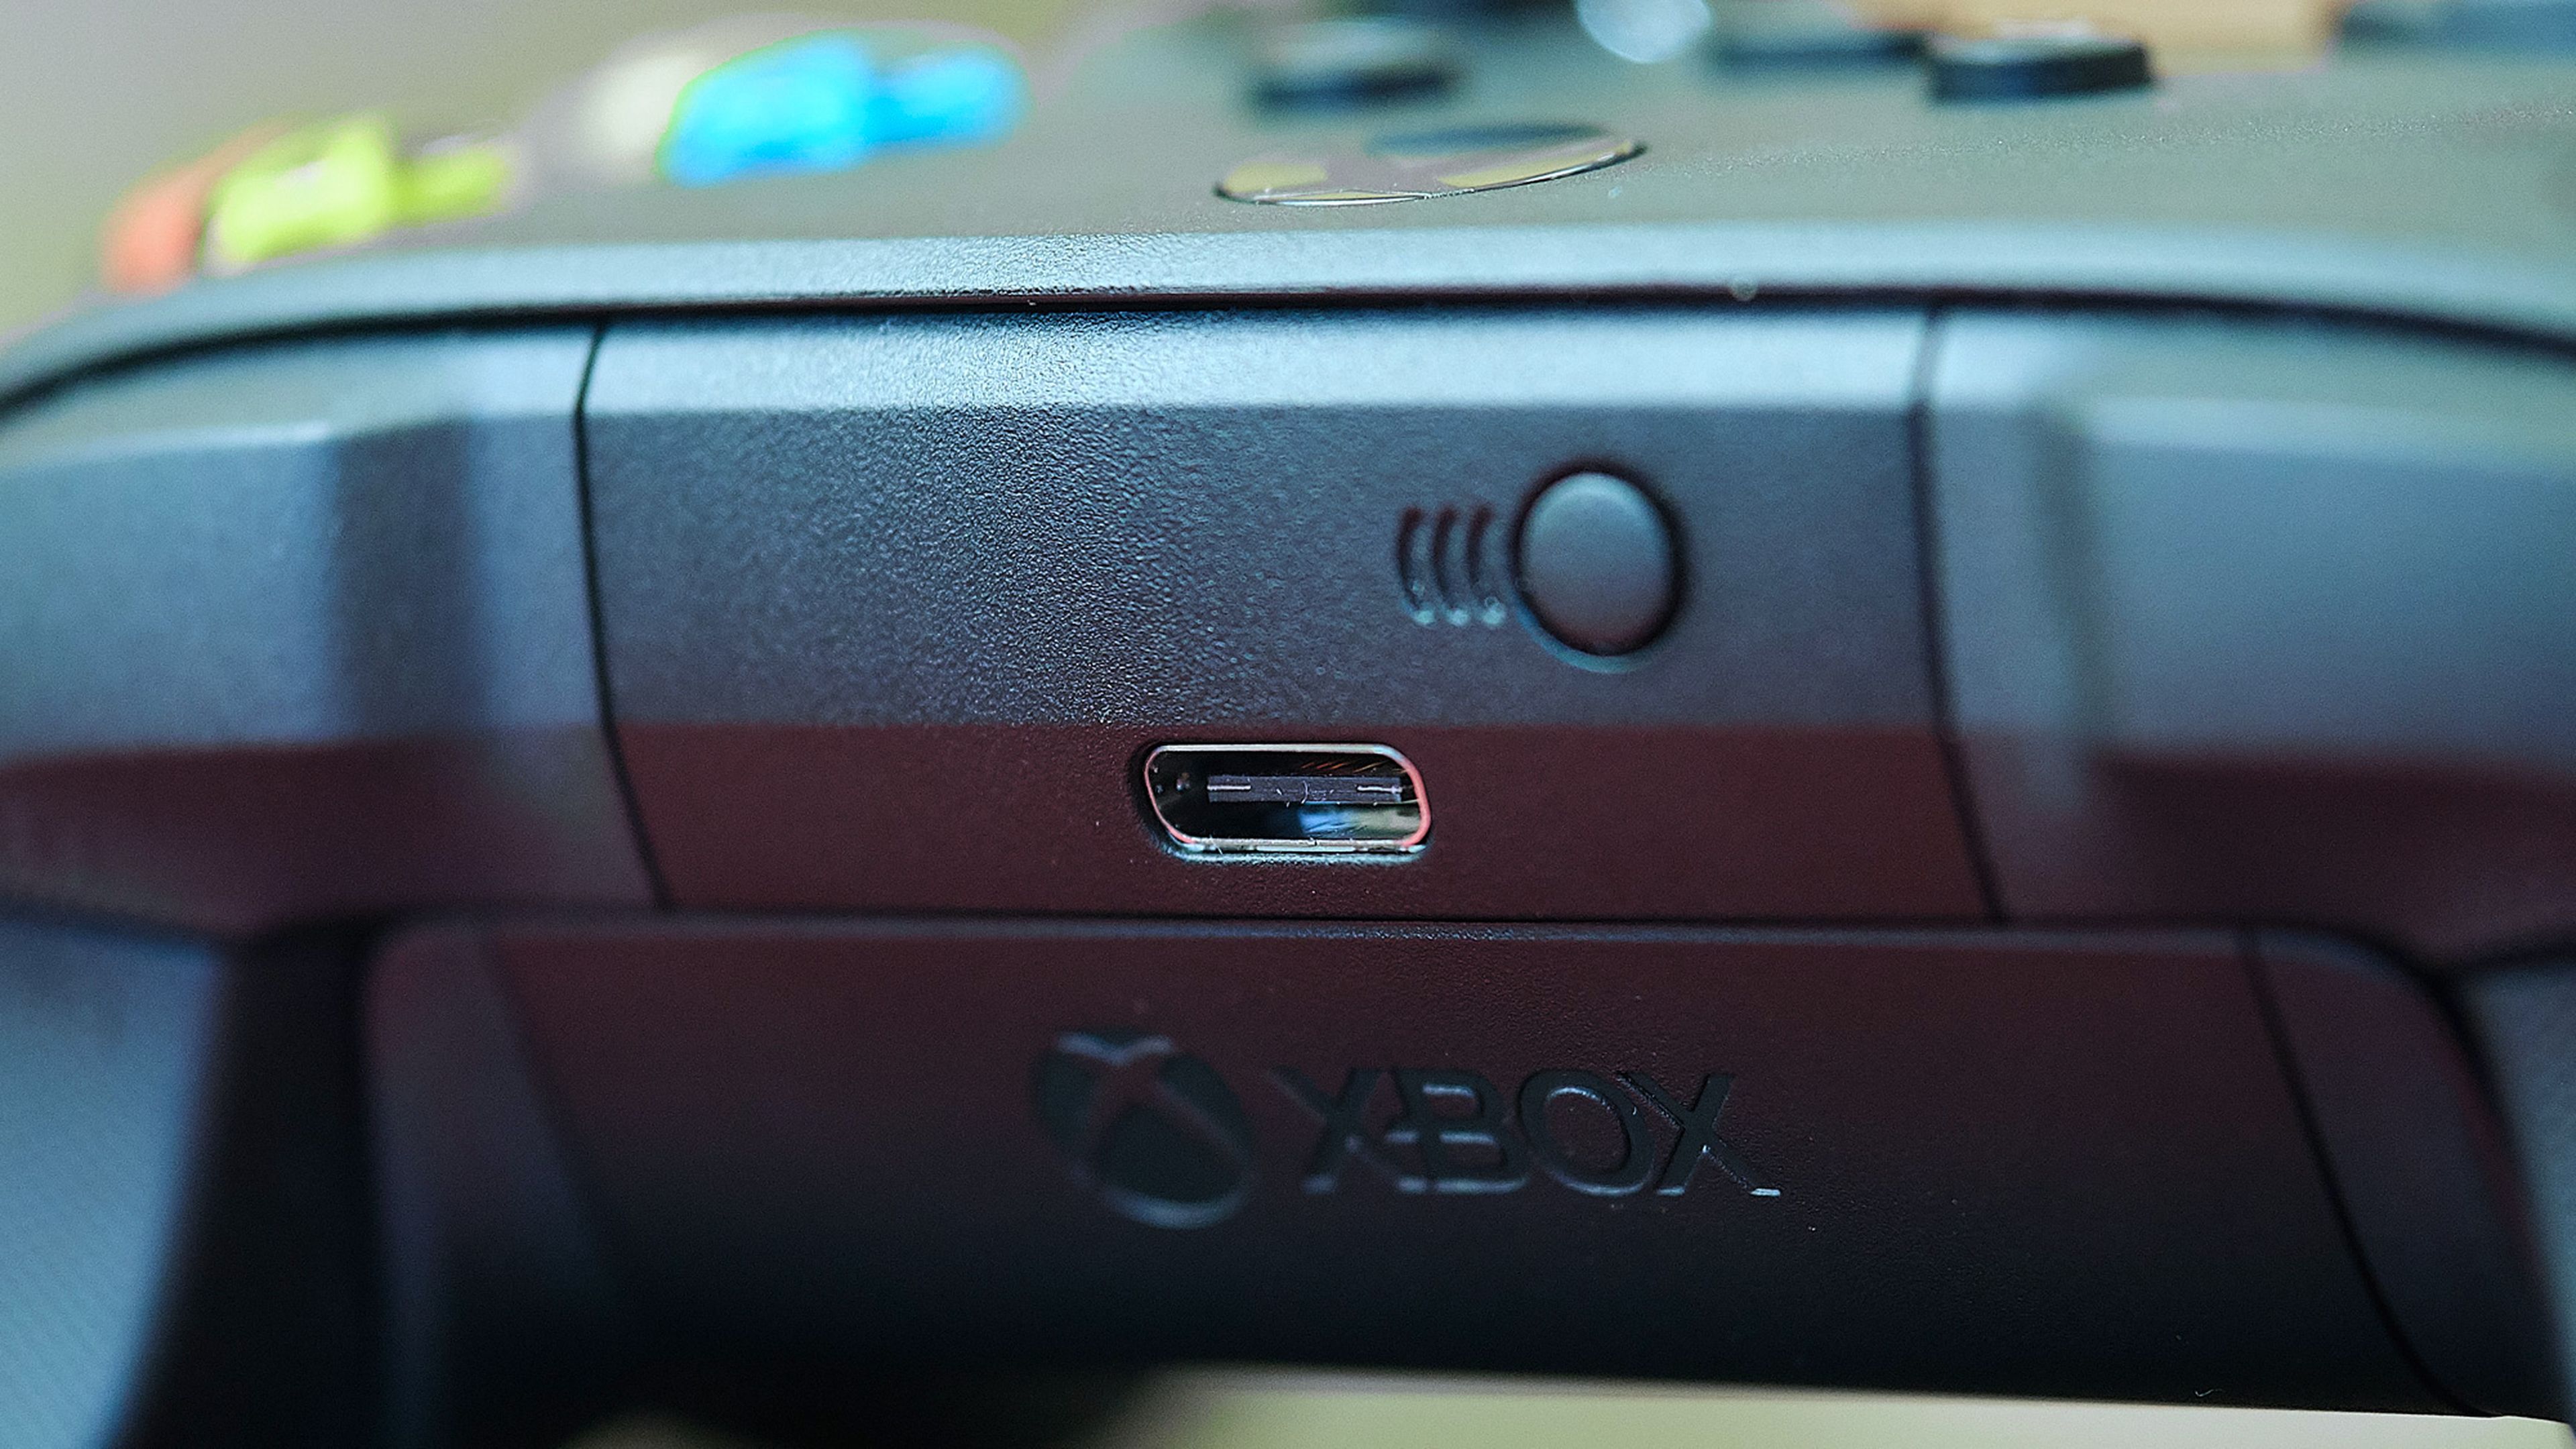 Nuestros lectores opinan: Xbox Series X y sus primeros juegos mejorados